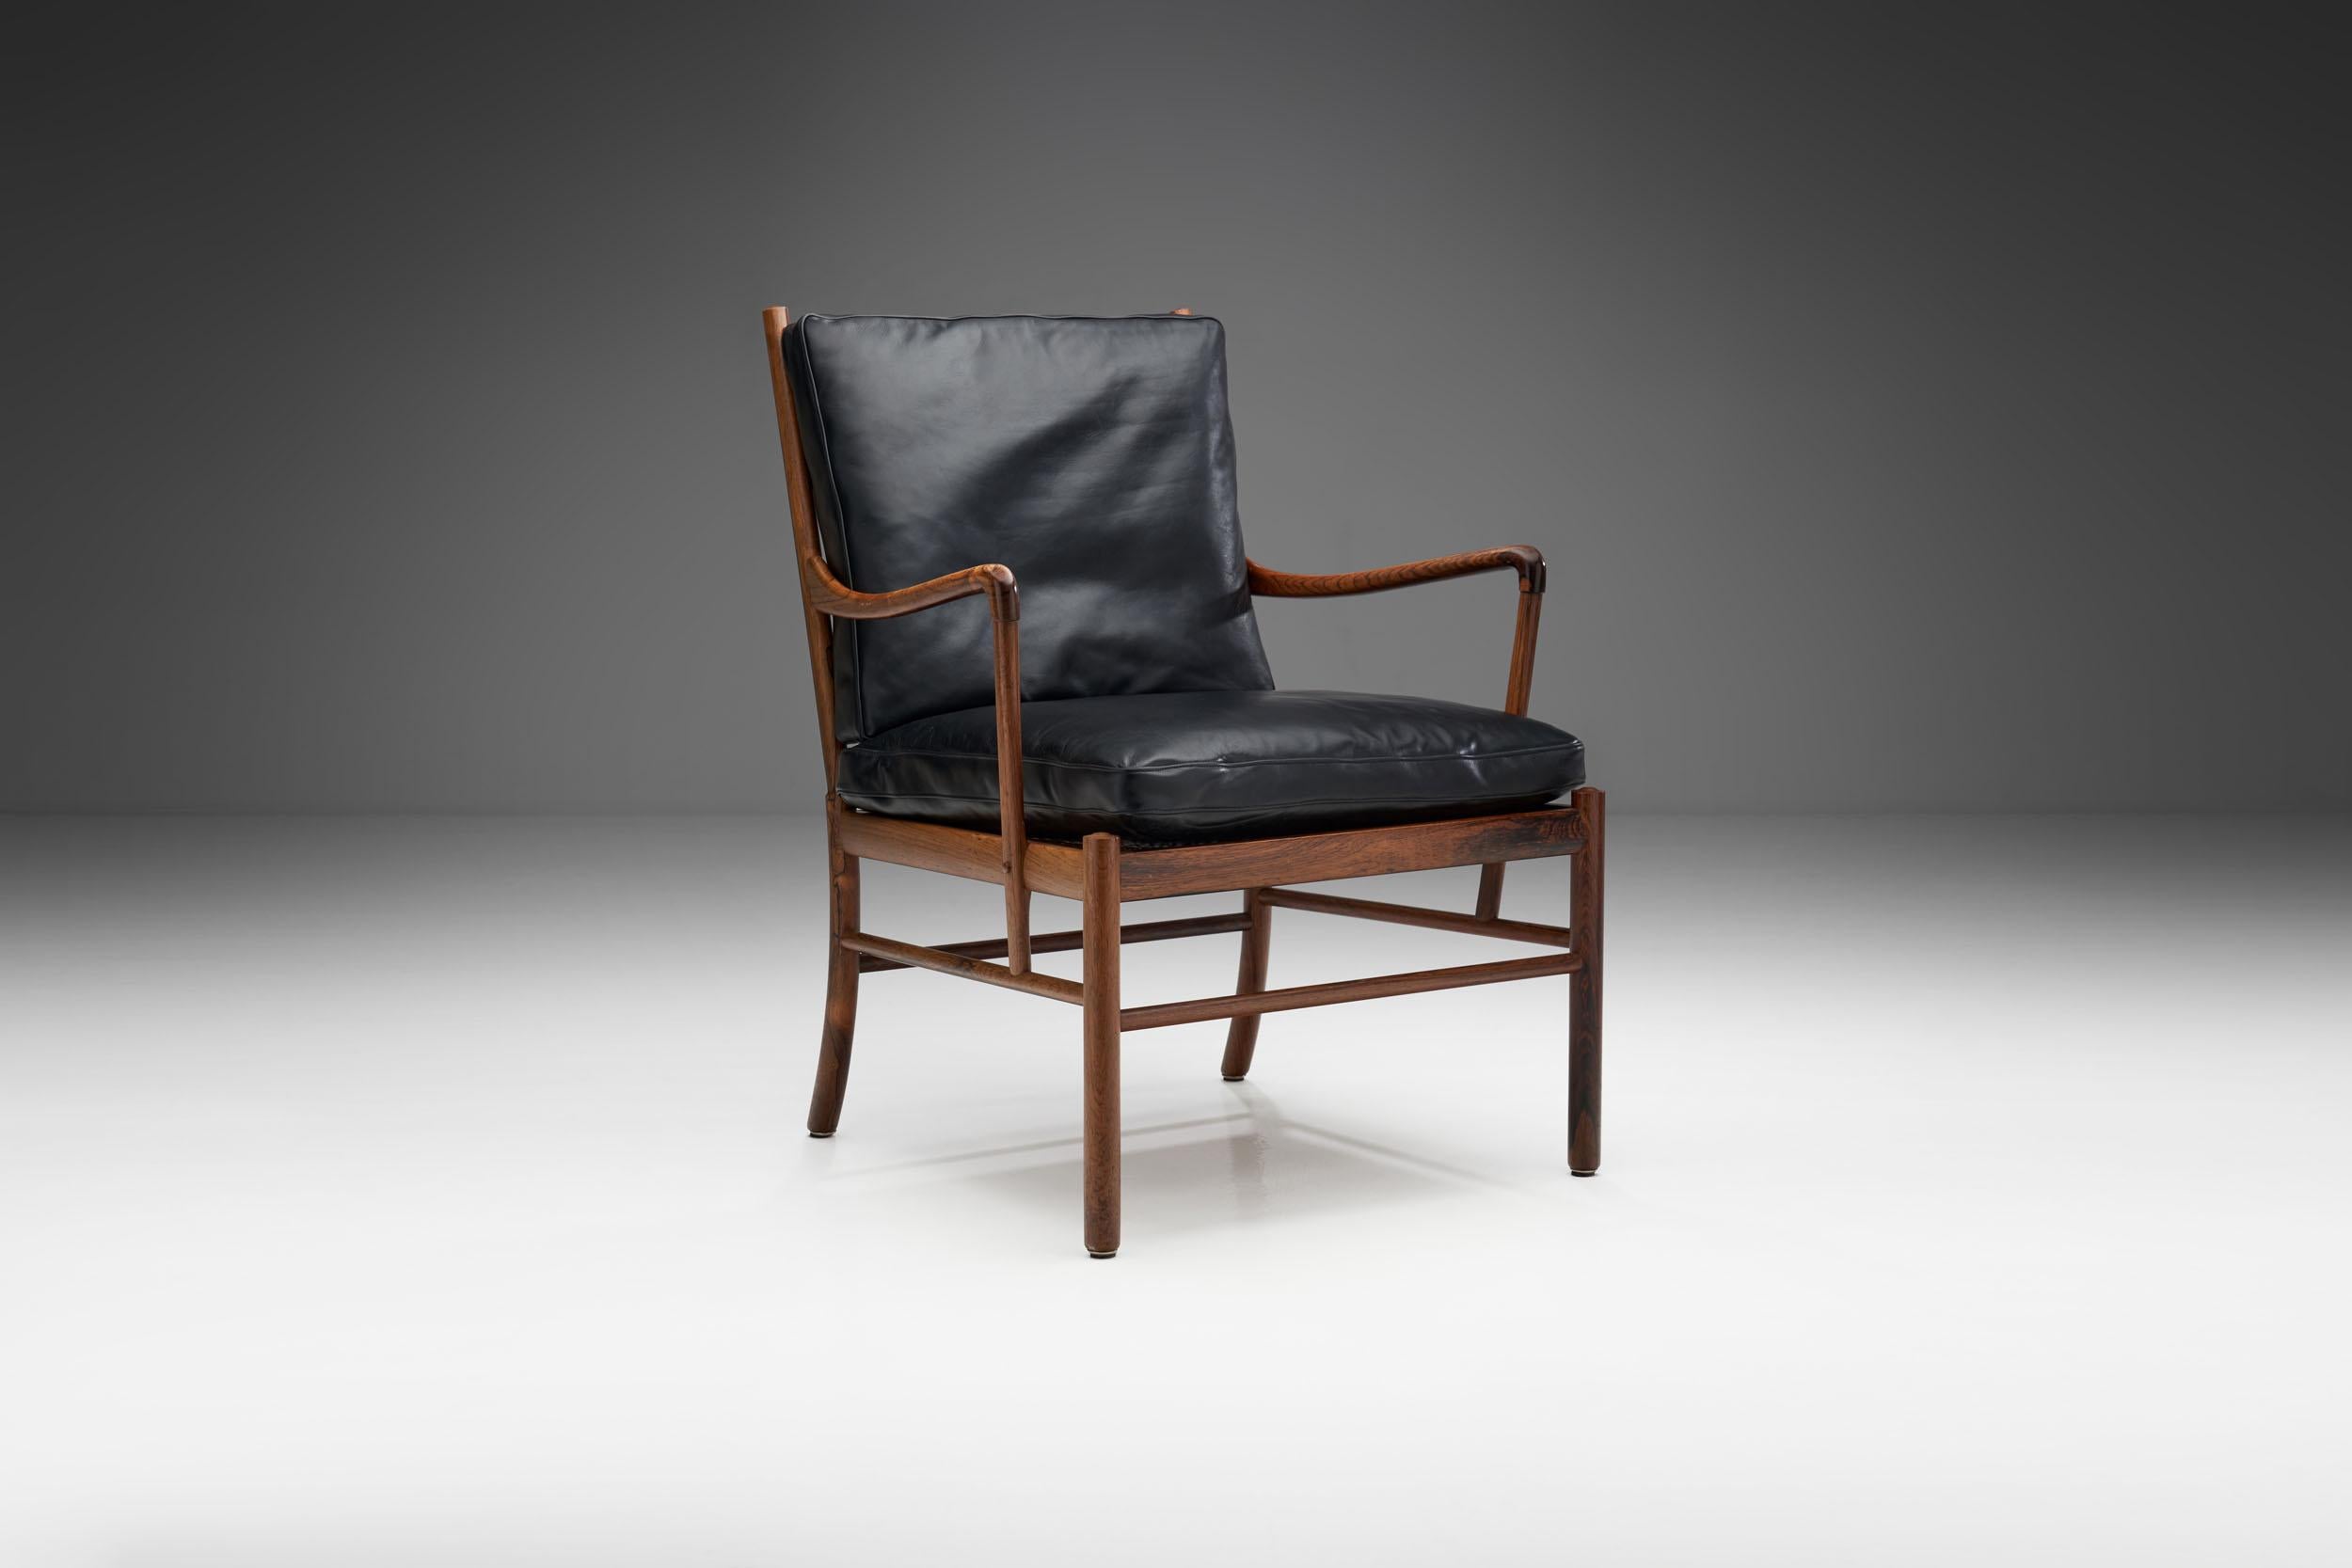 Der Colonial Stuhl ist einer der wichtigsten Entwürfe des dänischen Designers Ole Wanscher, der sich von britischen und französischen Kolonialmöbeln des 18. und 19. Jahrhunderts inspirieren ließ. Wanscher war mit der Ablehnung der Vergangenheit